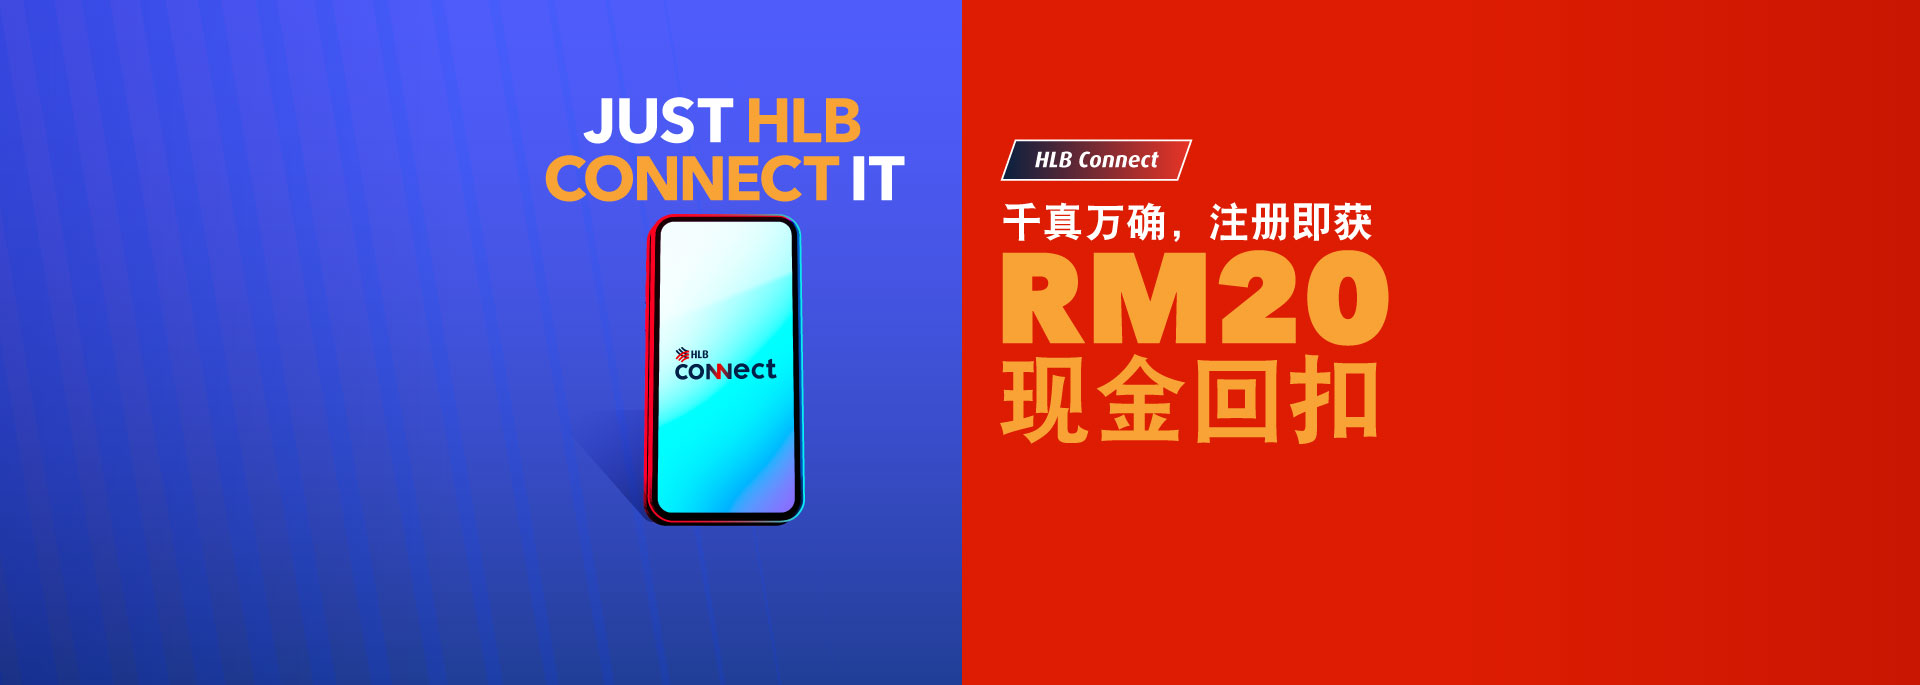 注册 HLB Connect 并保证获得RM20现金回扣